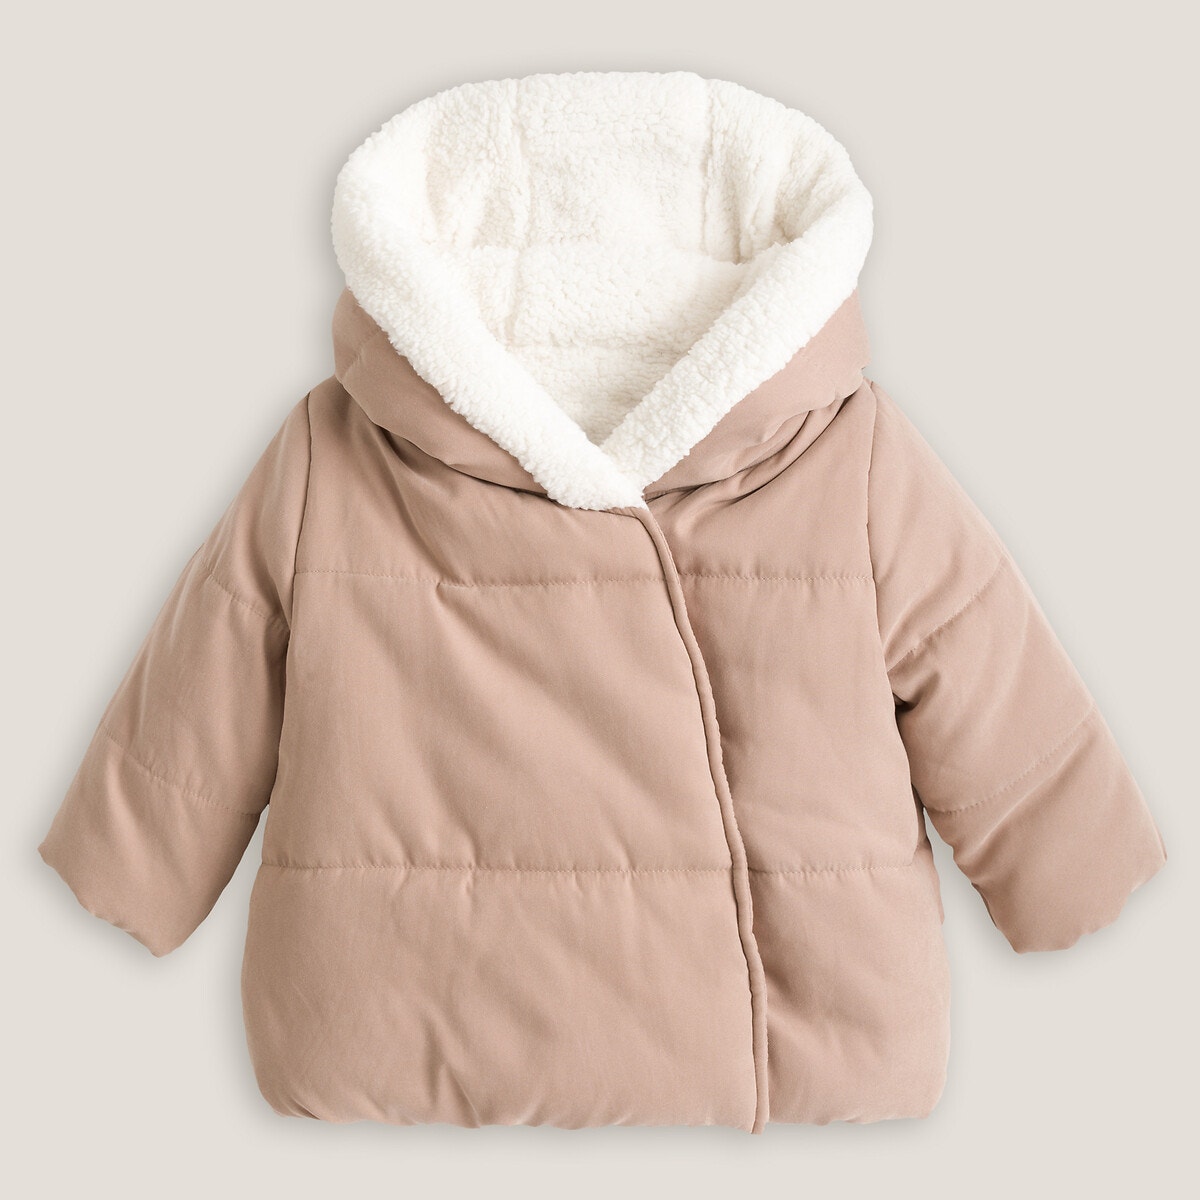 ΠΑΙΔΙ | Βρεφικά | Πανωφόρια | Παλτό Ζεστό μπουφάν με κουκούλα, 1 μηνός - 2 ετών